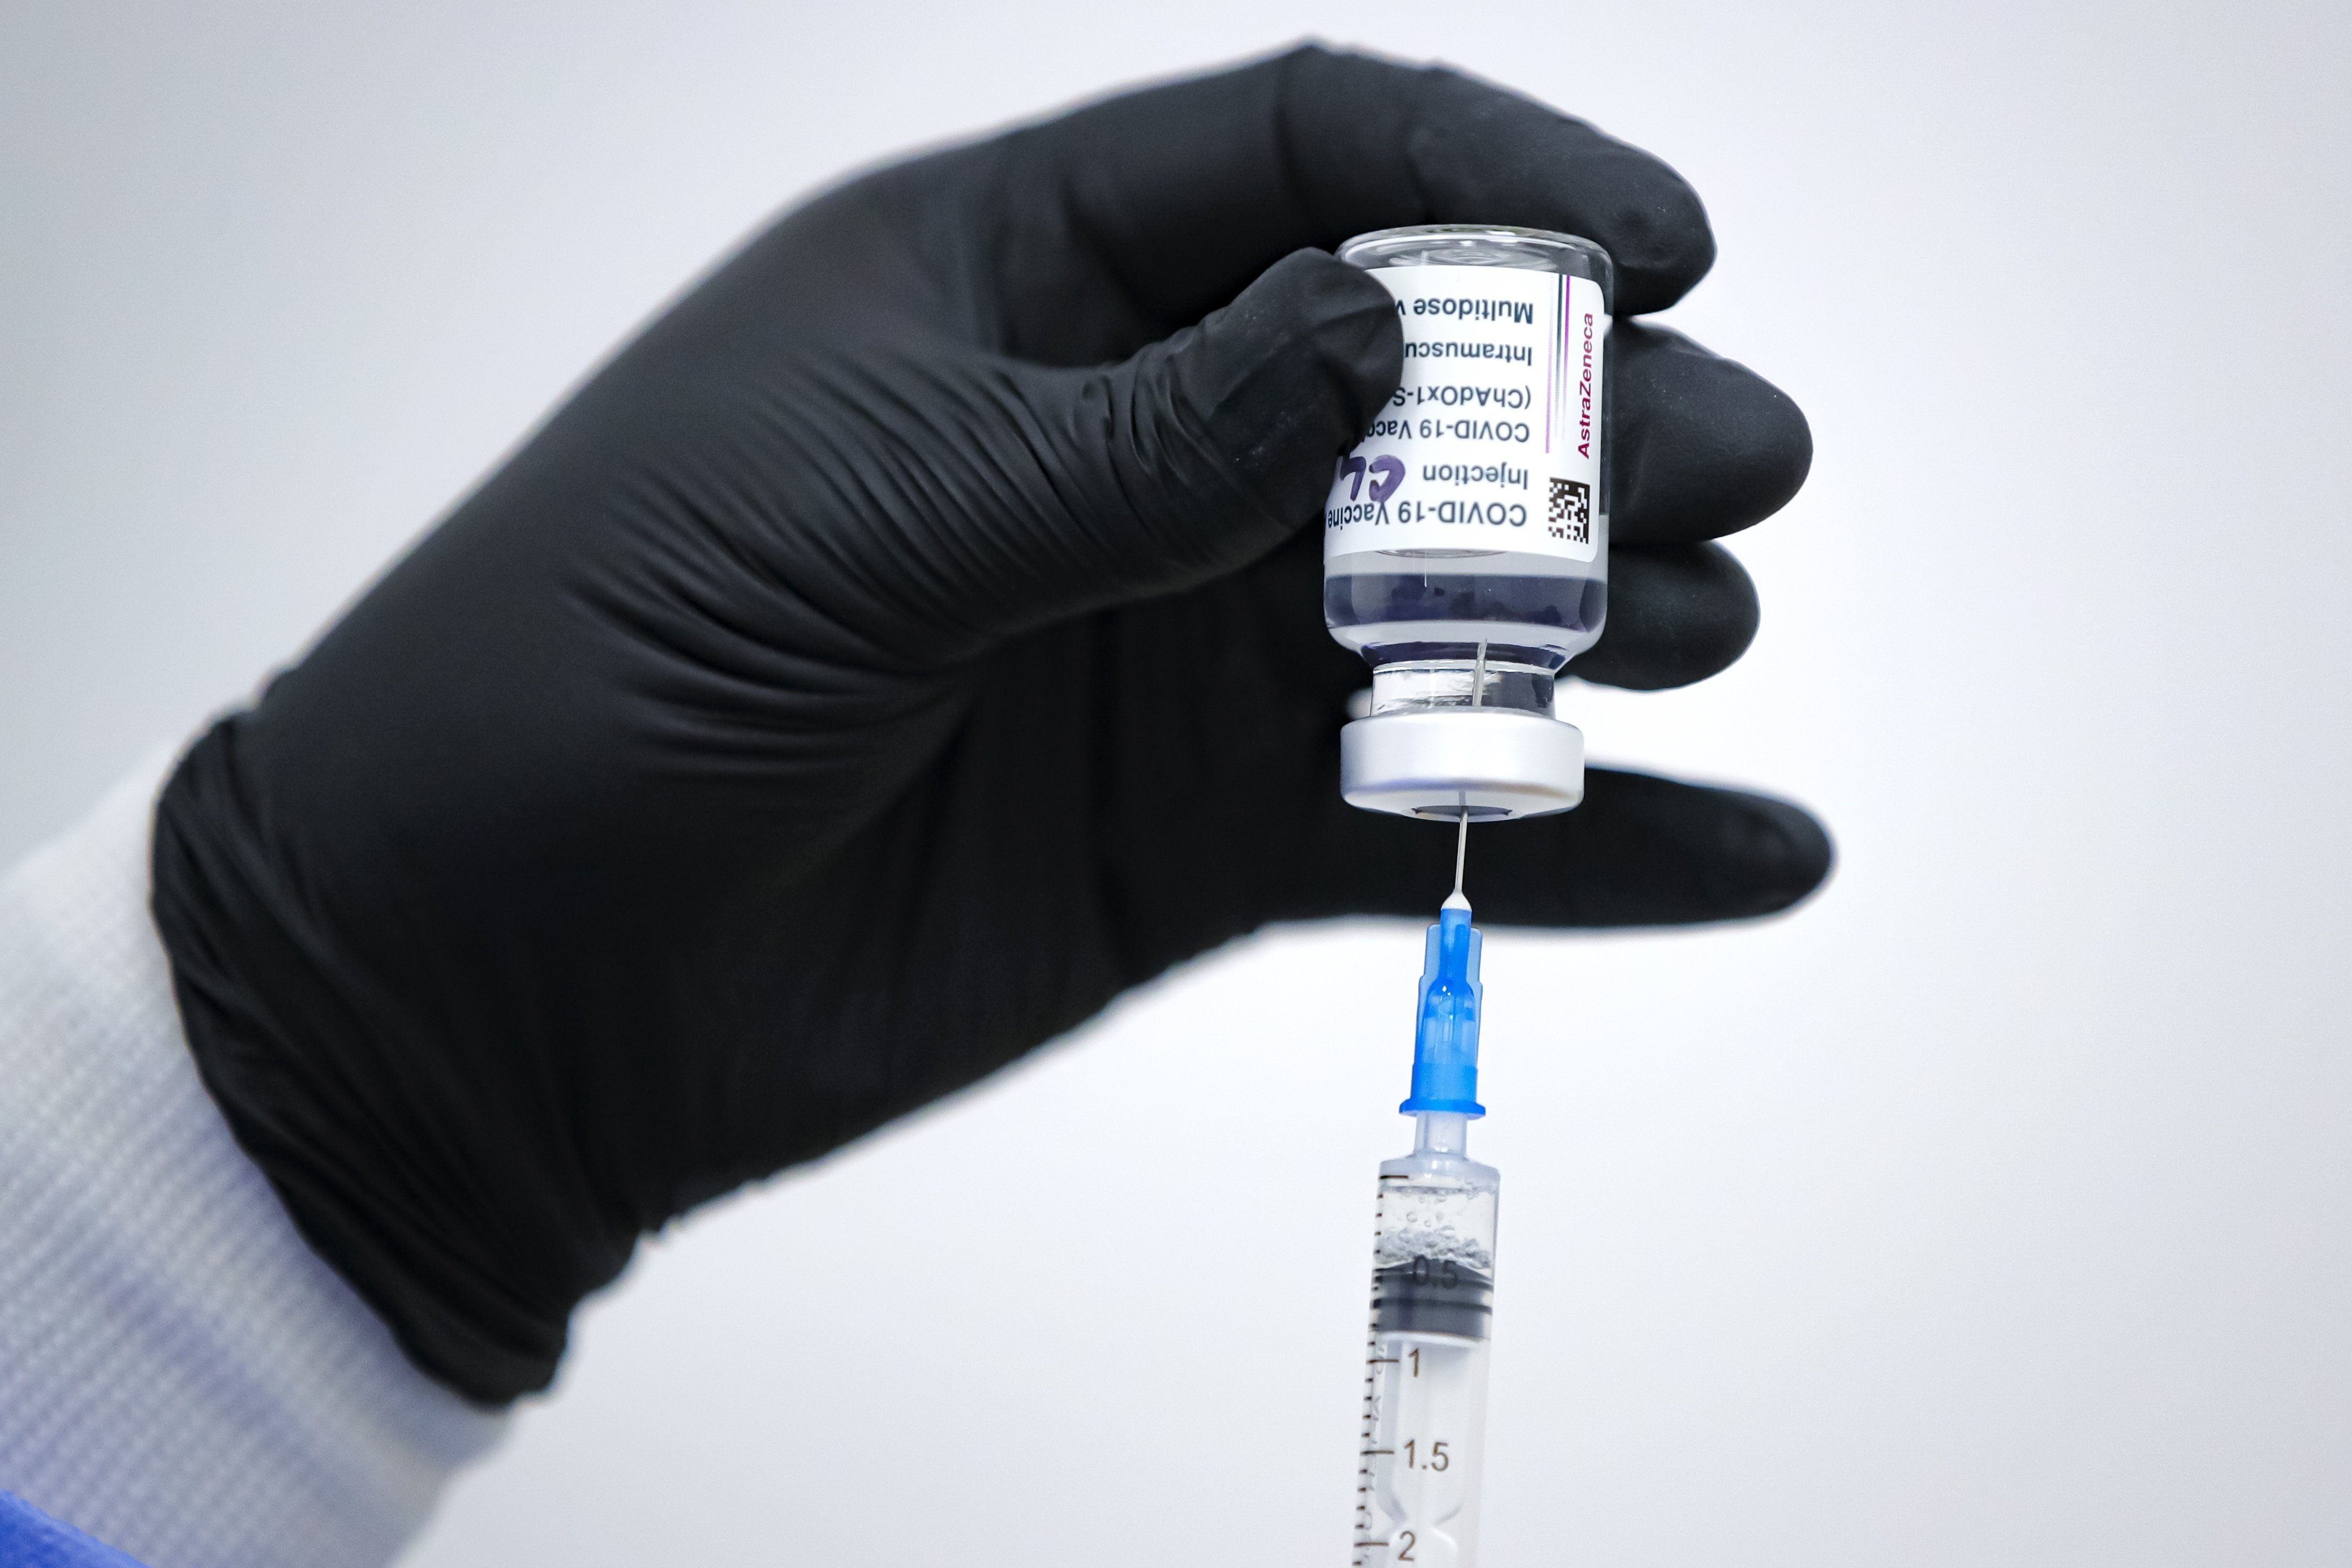 Австрия отменя задължителната ваксинация срещу COVID-19.
За това съобщиха министрите на здравеопазването